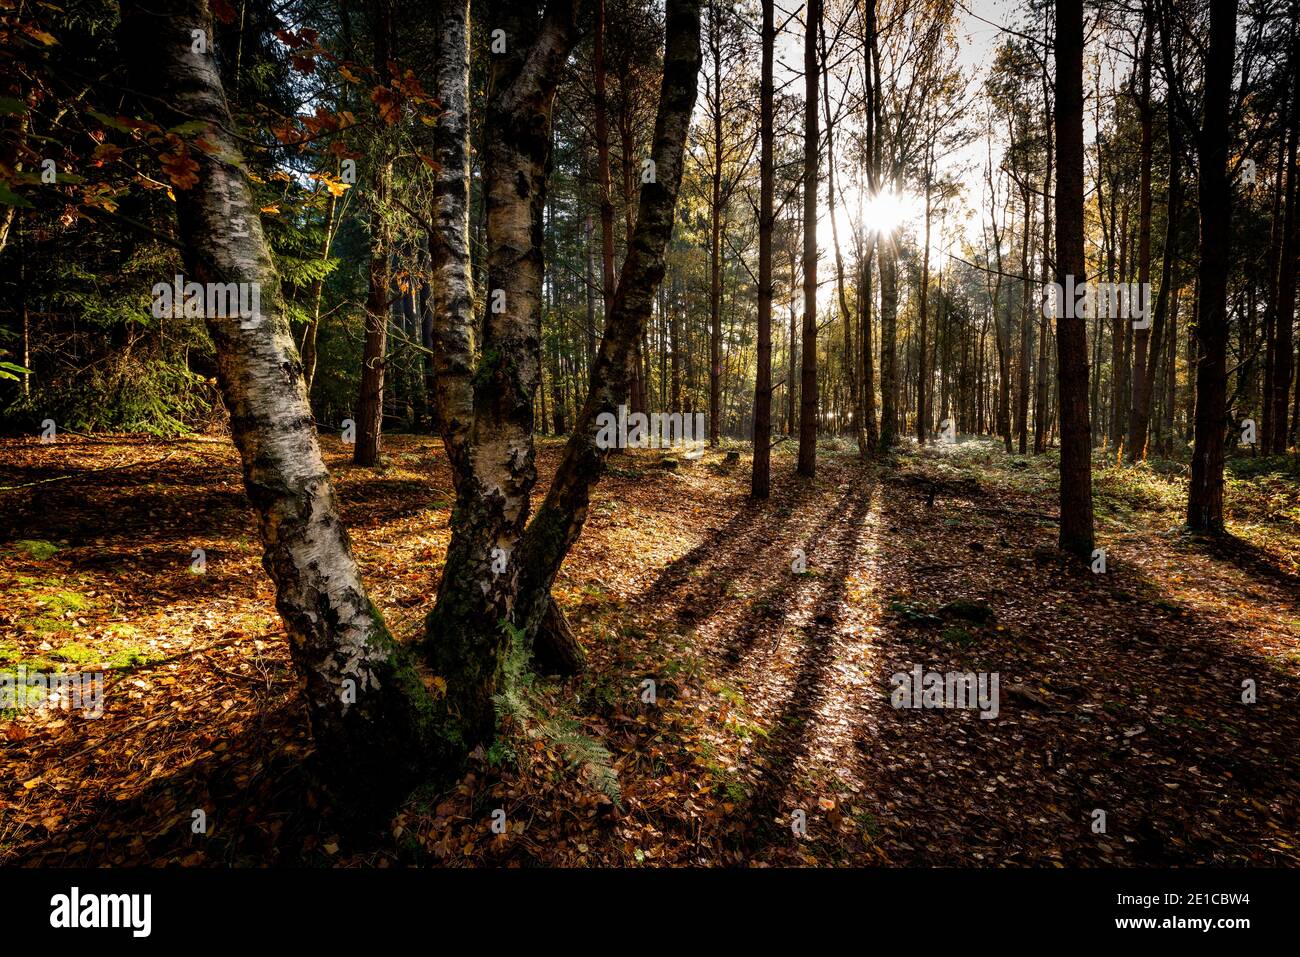 Un arbre d'automne isolé dans une scène de bois britannique. Blidworth Woods, Nottingham, Angleterre, Royaume-Uni Banque D'Images